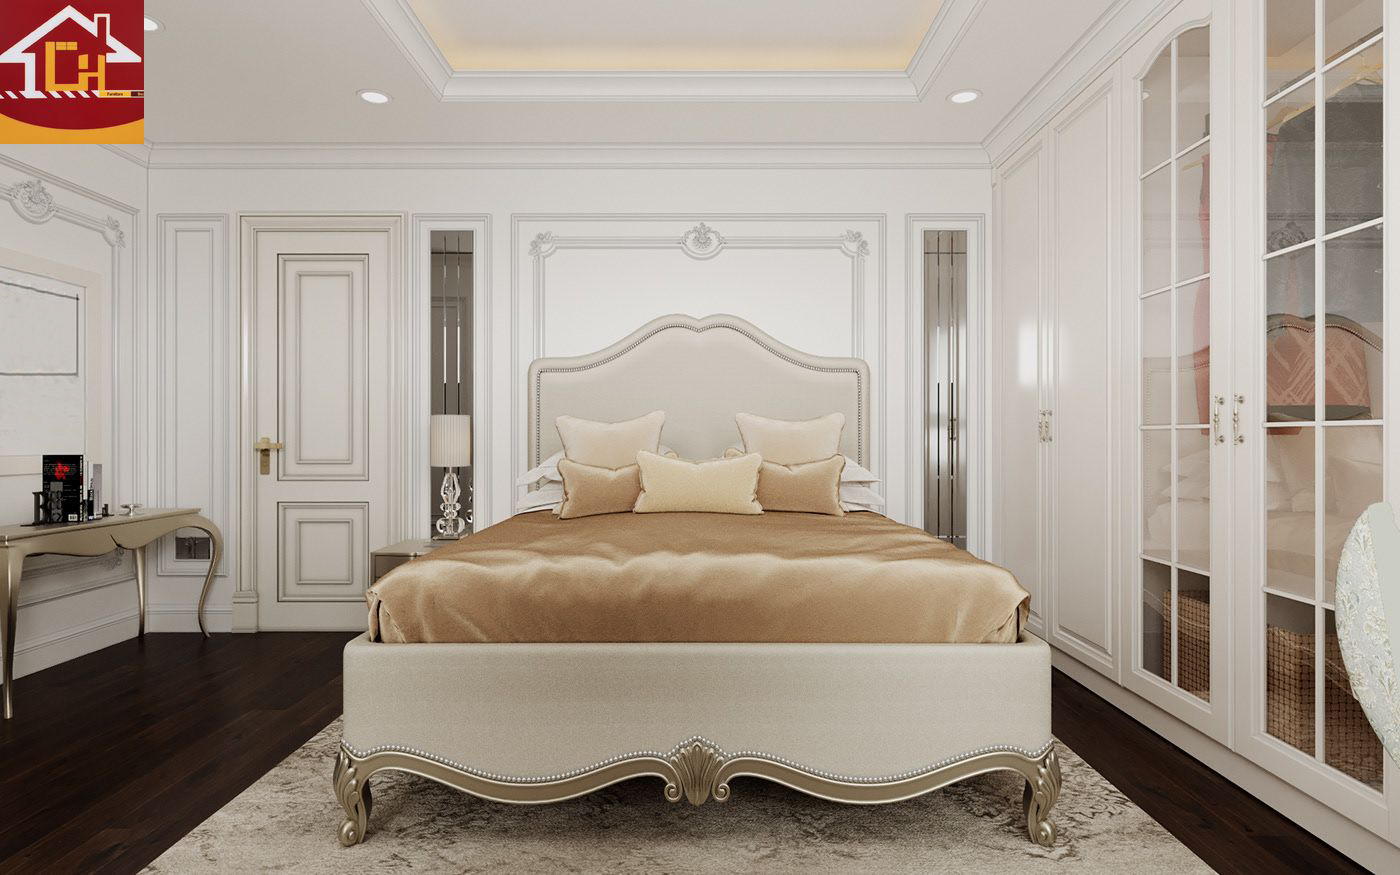 Thiết kế nội thất căn hộ 2 ngủ tại chung cư Vinhomes Symphony theo phong cách tân cổ điển